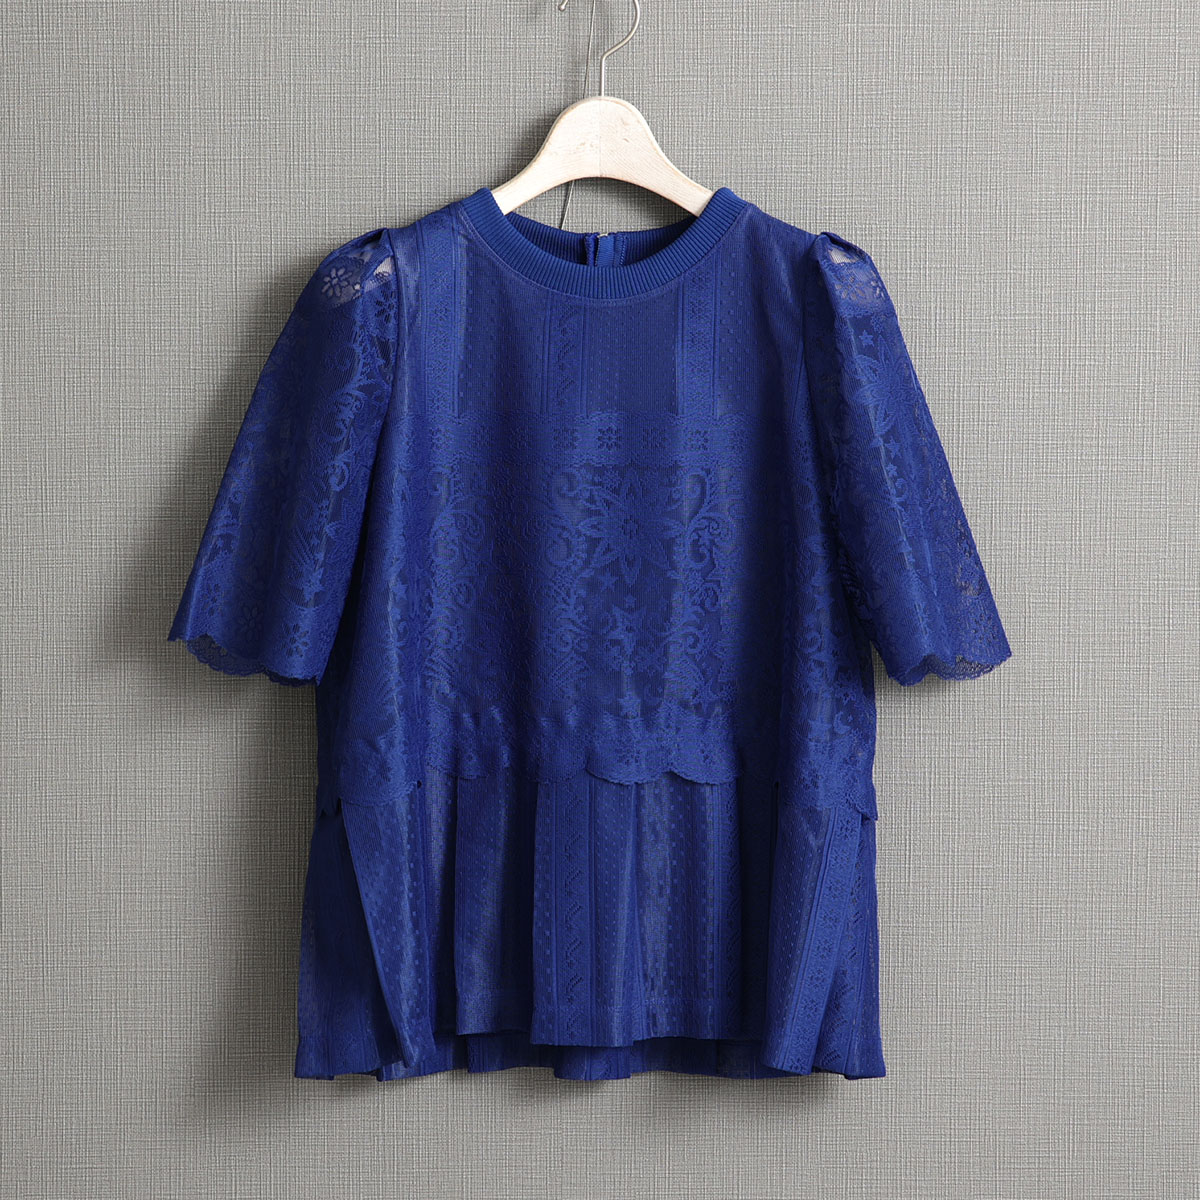 『Trellis lace』 pullover blouse BLUE画像